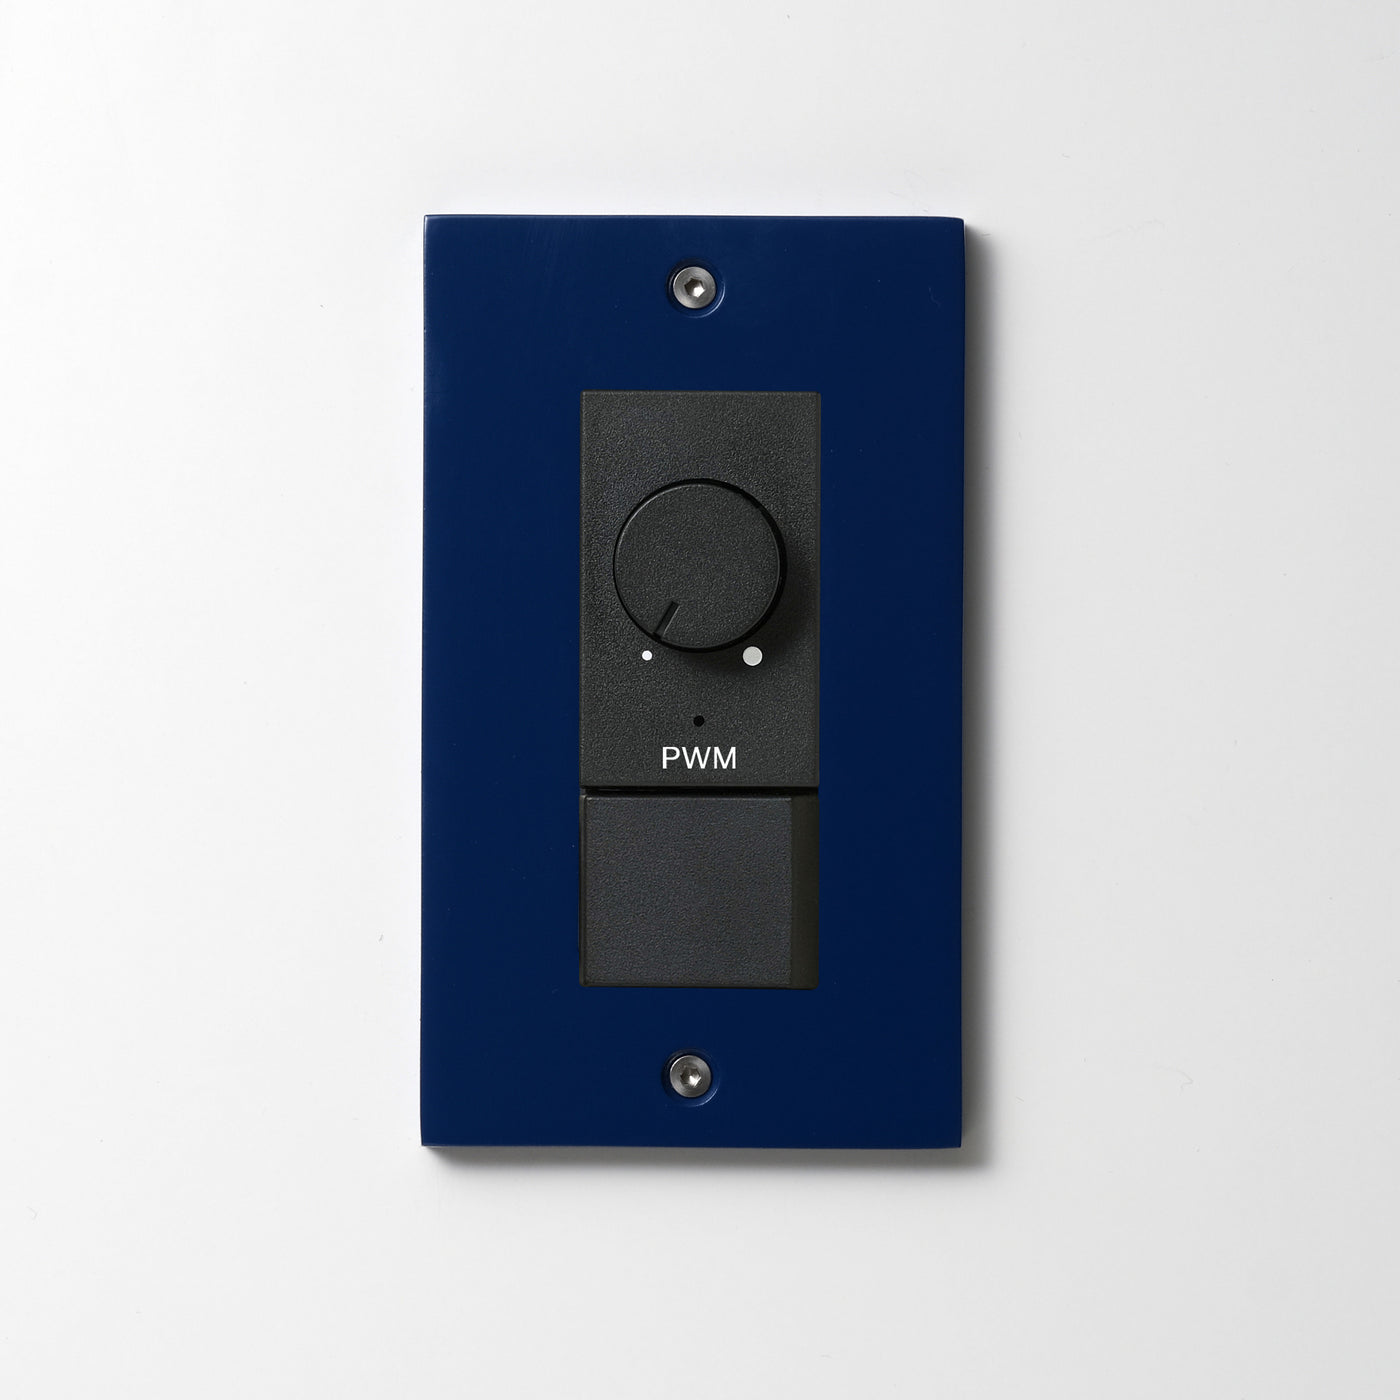 アルミダイキャスト（ブルー）プレート  <br>+ NK PWM制御方式(1ch)ライトコントロール＋片切、3路スイッチ　 ブラック